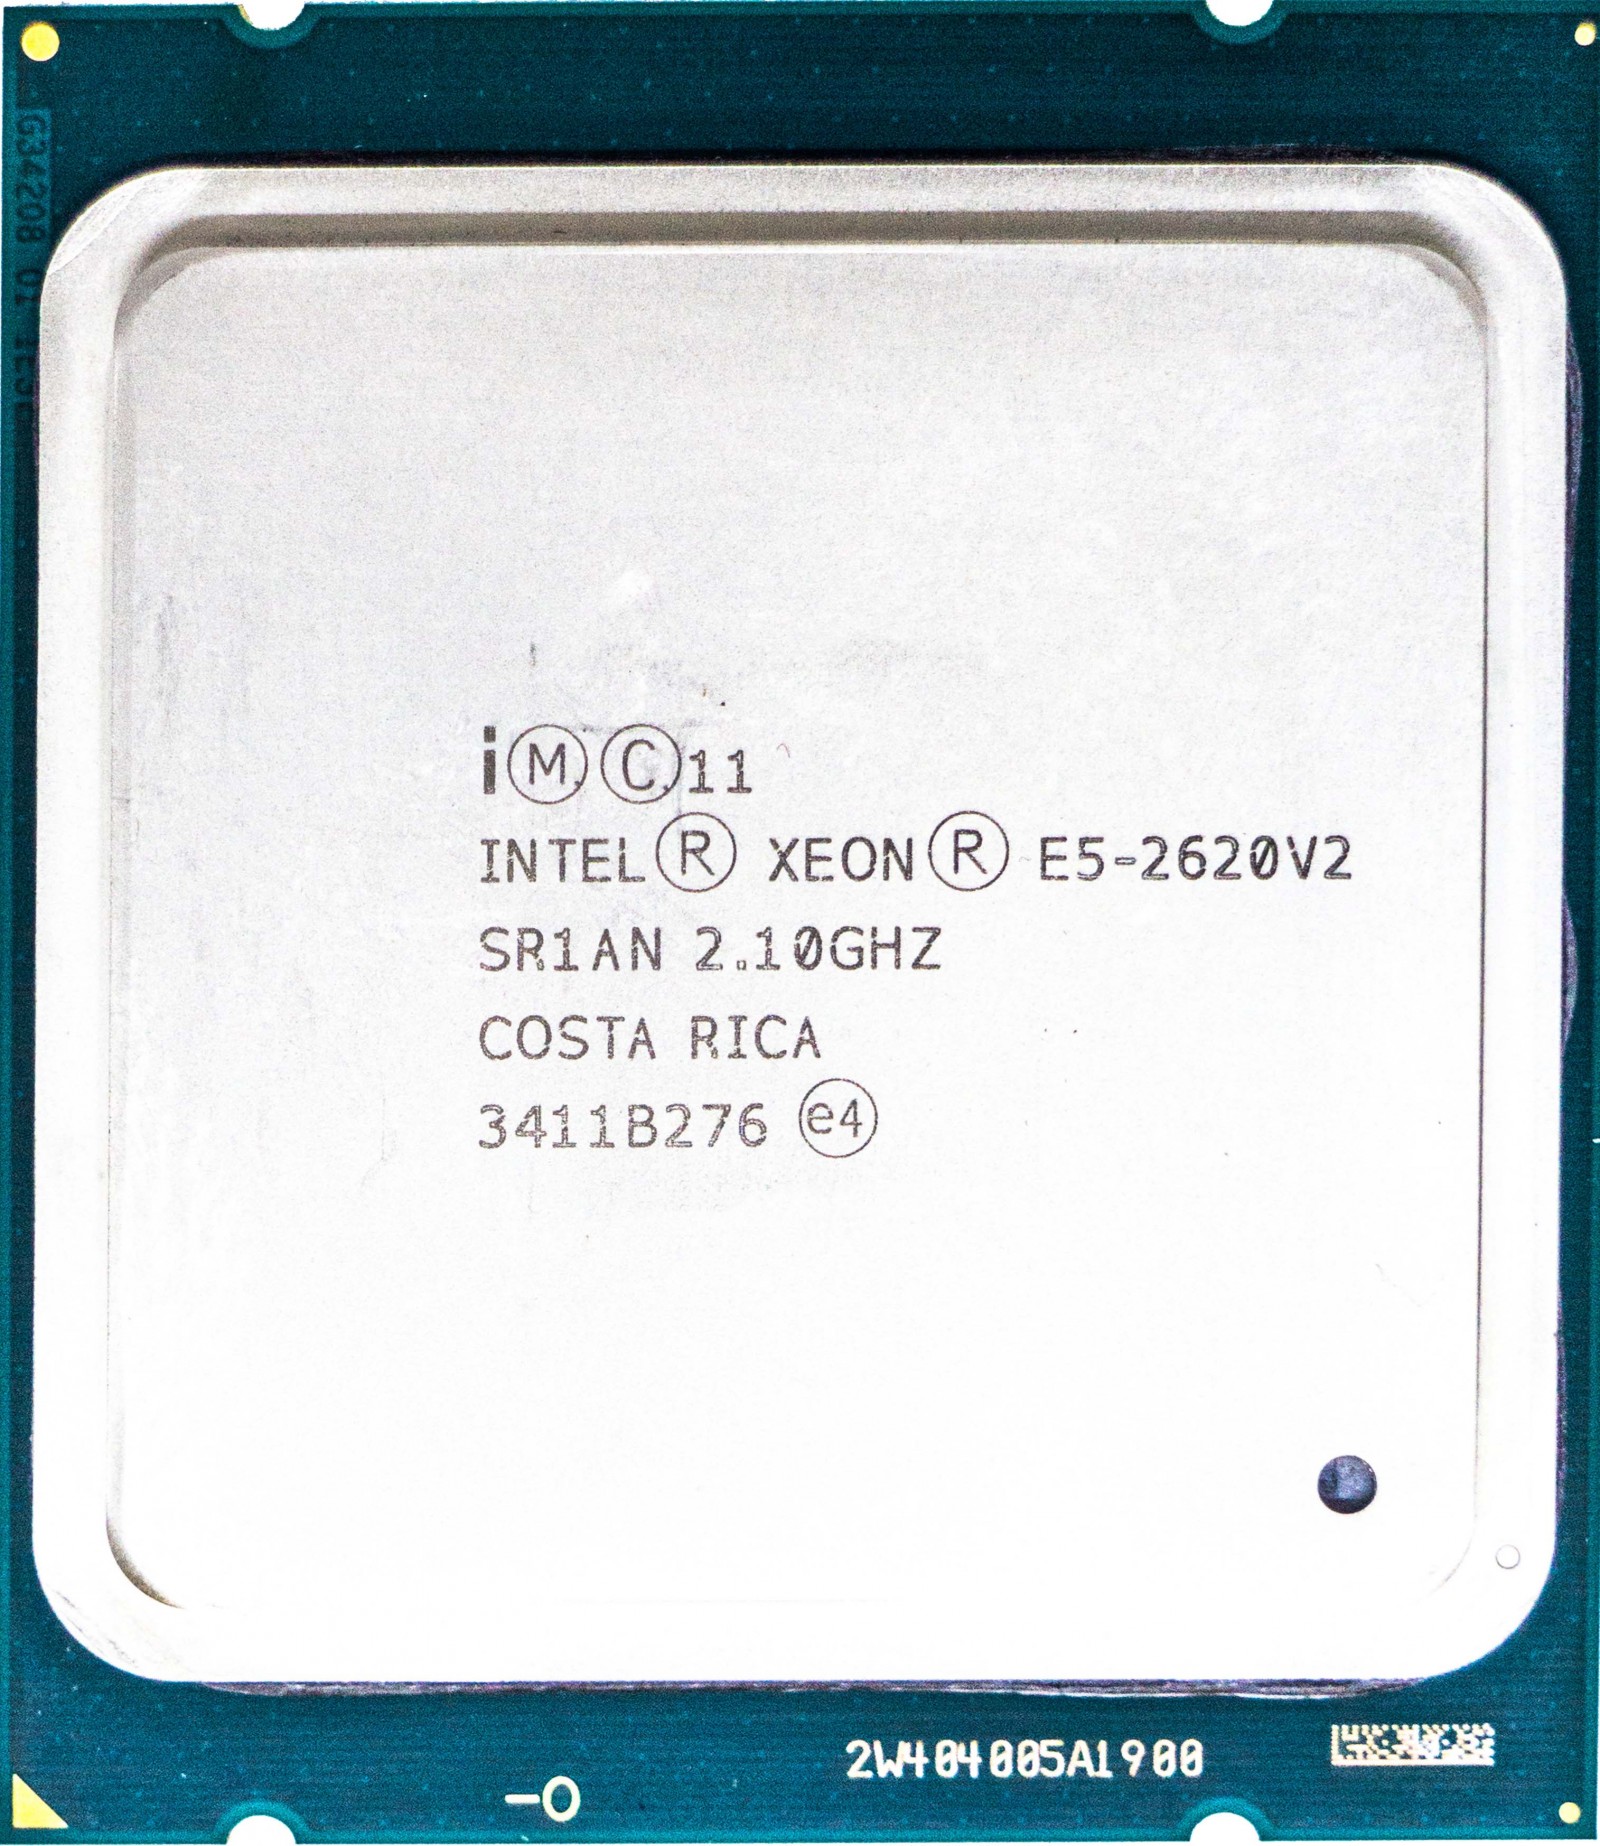 Intel Xeon E5-2620 V2 E5-2620V2 2.10GHz 6Core LGA2011 Processor